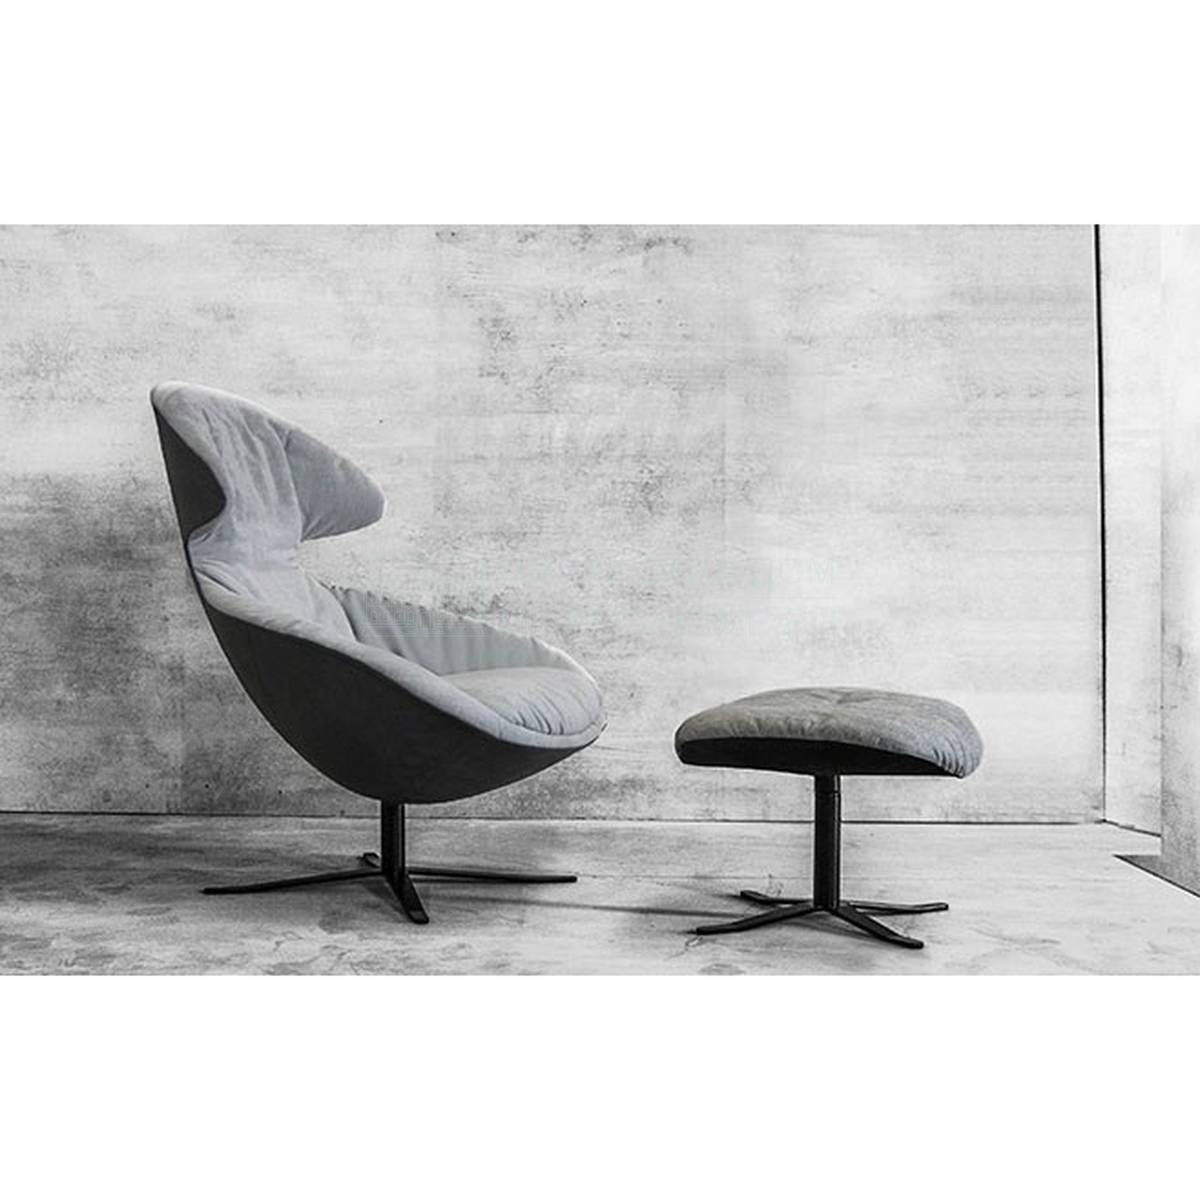 Каминное кресло Loft soft upholstered из Италии фабрики TONON